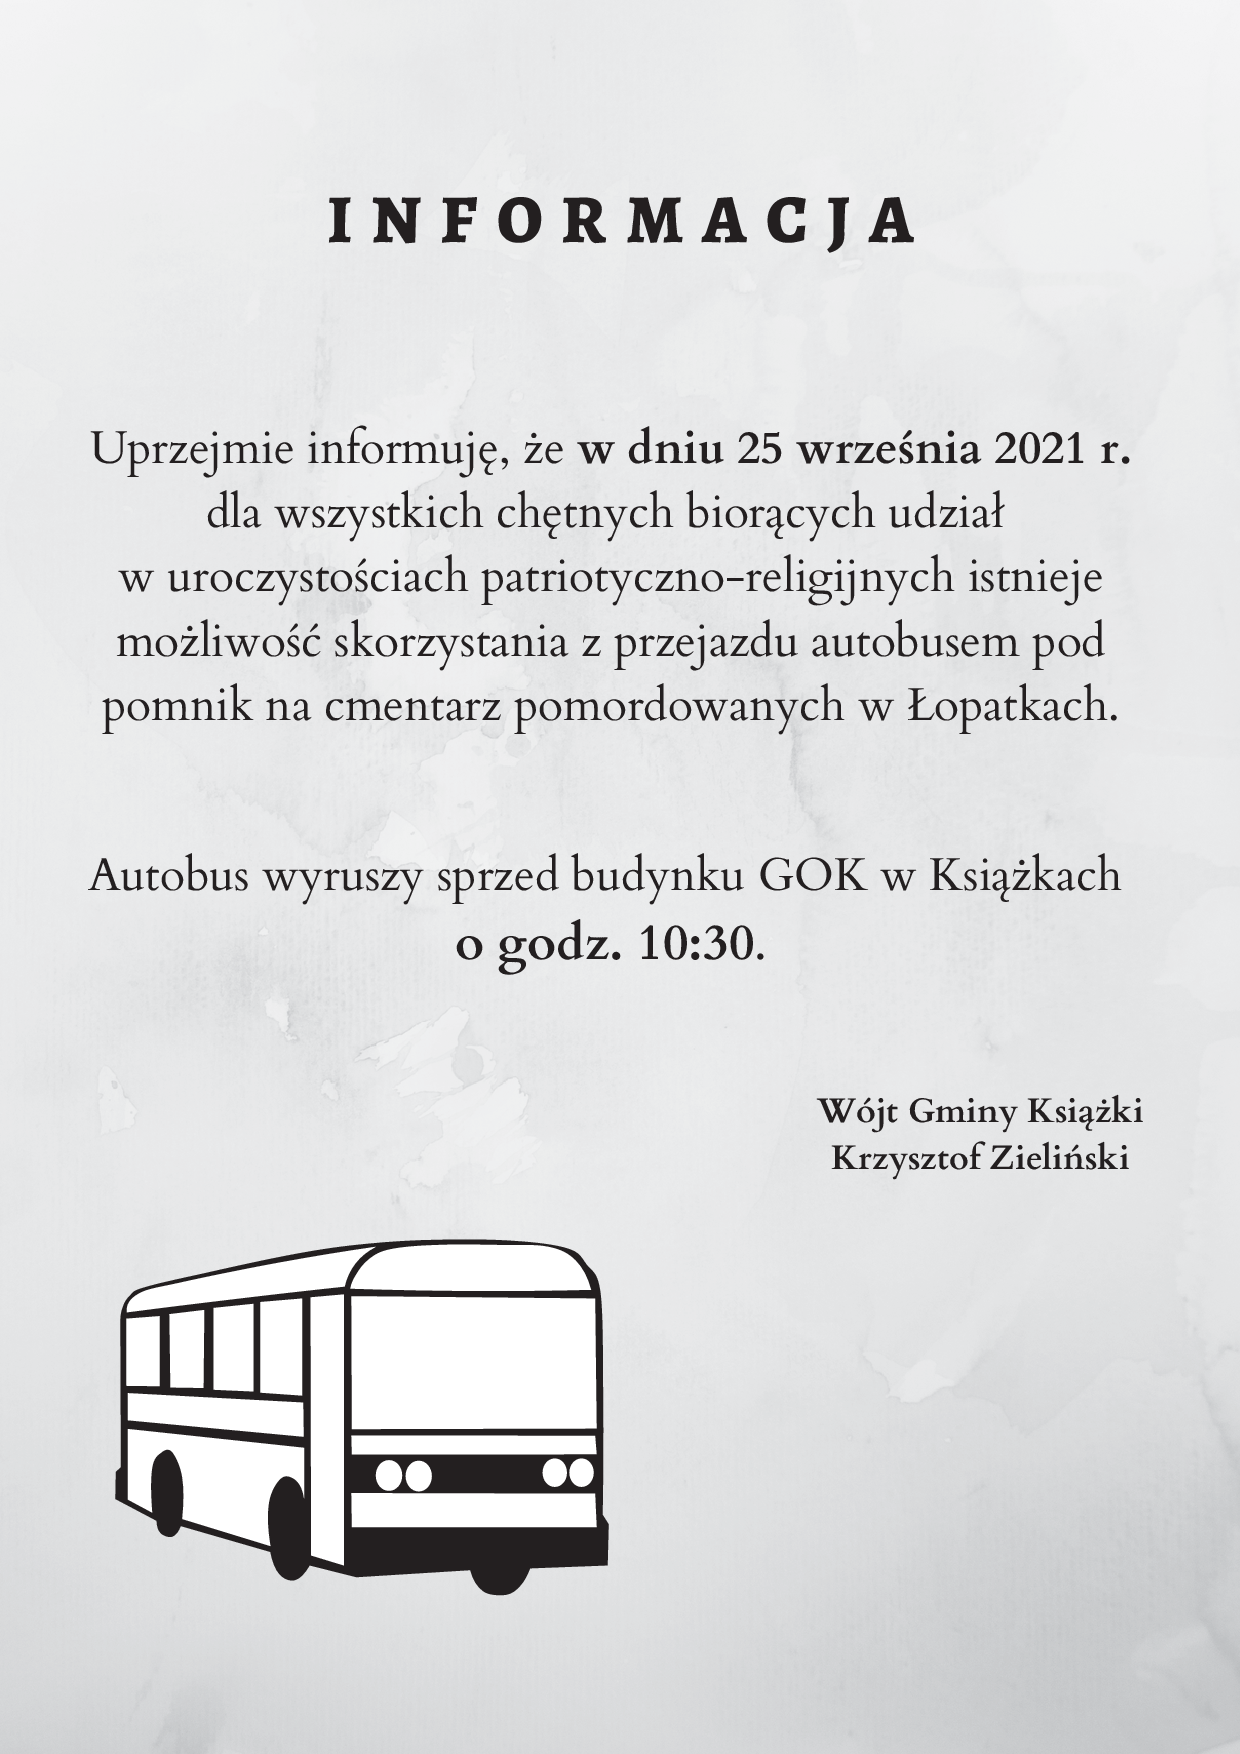 I N F O R M A C J A Uprzejmie informuję, że w dniu 25 września 2021 r. dla wszystkich chętnych biorących udział w uroczystościach patriotyczno-religijnych istnieje możliwość skorzystania z przejazdu autobusem pod pomnik na cmentarz pomordowanych w Łopatkach. Autobus wyruszy sprzed budynku GOK w Książkach o godz. 10:30. Wójt Gminy Książki Krzysztof Zieliński